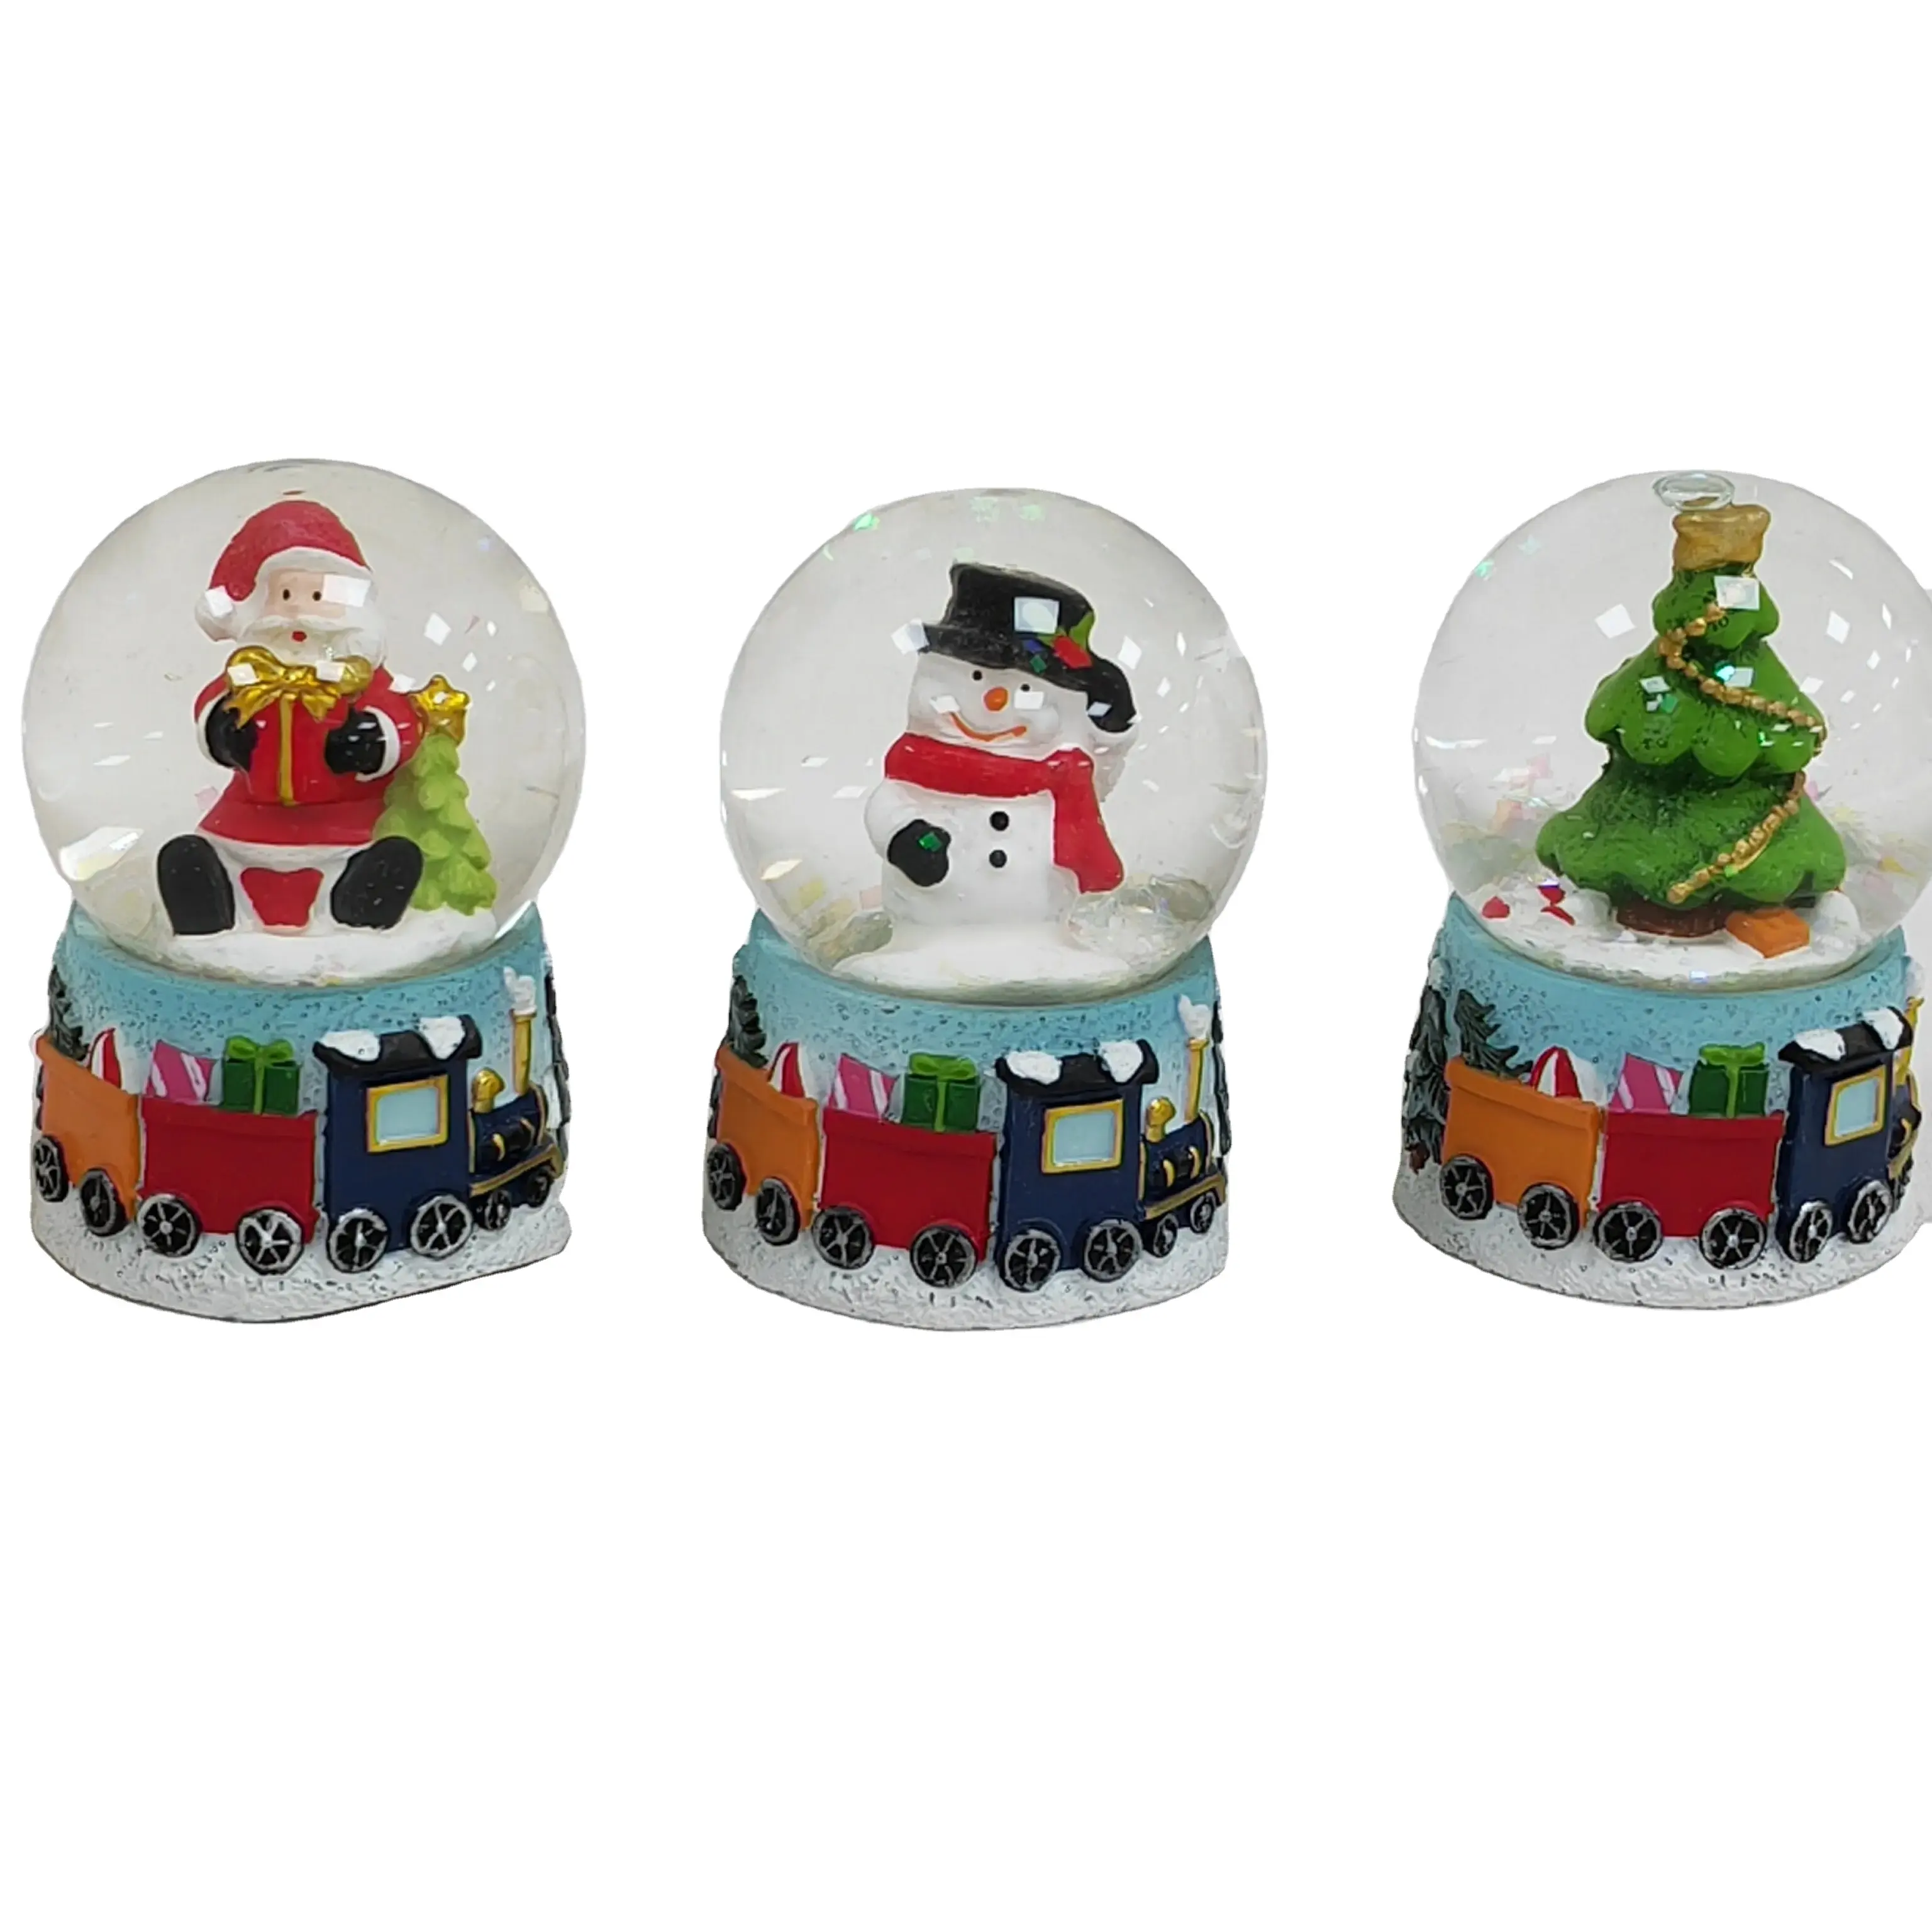 Boule à neige musicale de Noël-joue 8 chansons, y compris Jingle Bells et s'allume avec des couleurs LED changeantes